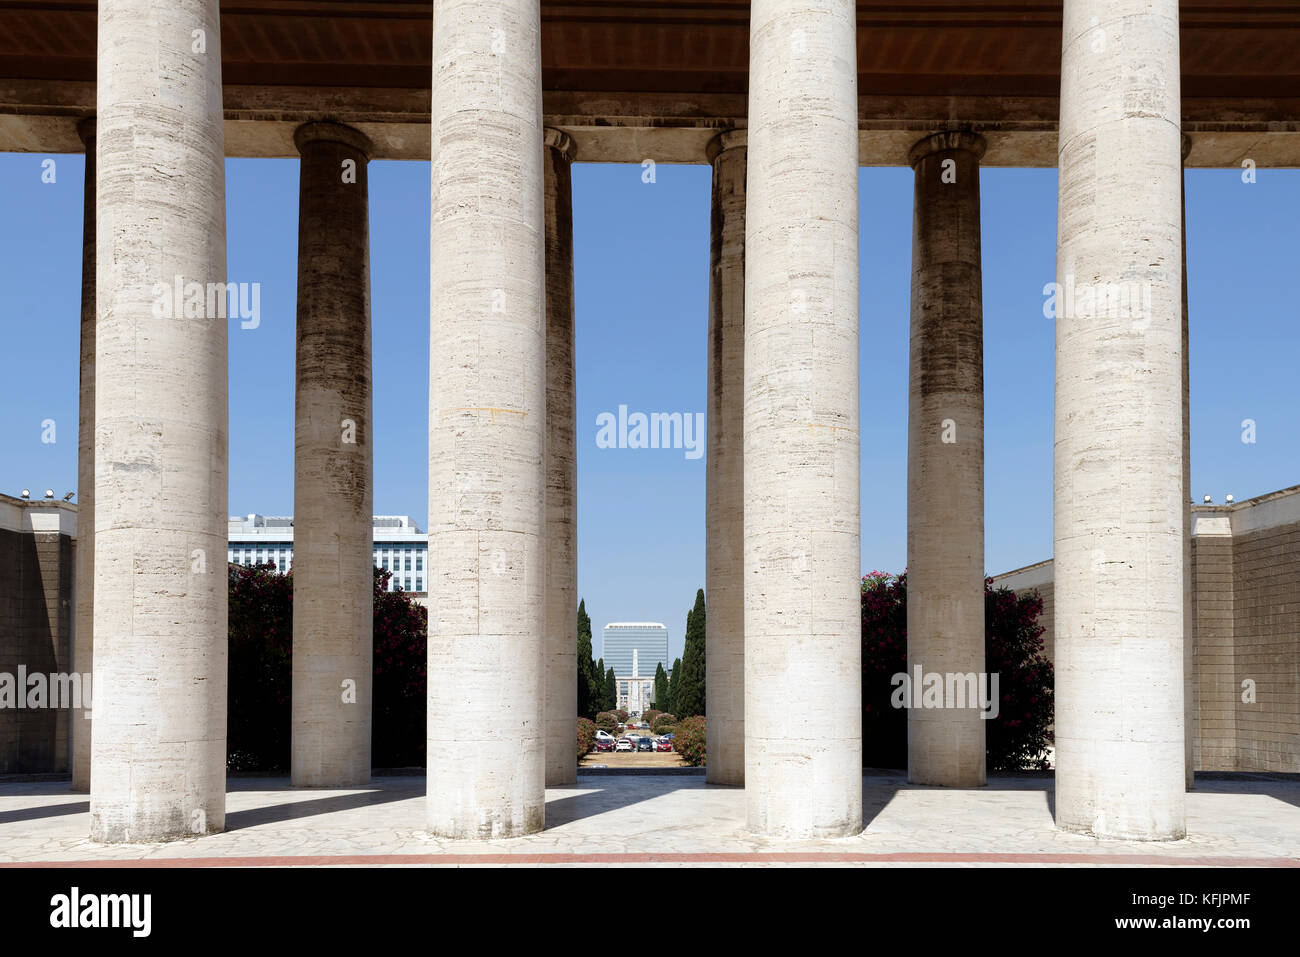 El Colonnade pórtico de columnas de travertino del Museo de la civilización romana (Museo della Civilta Romana). EUR, Roma, Italia. Foto de stock